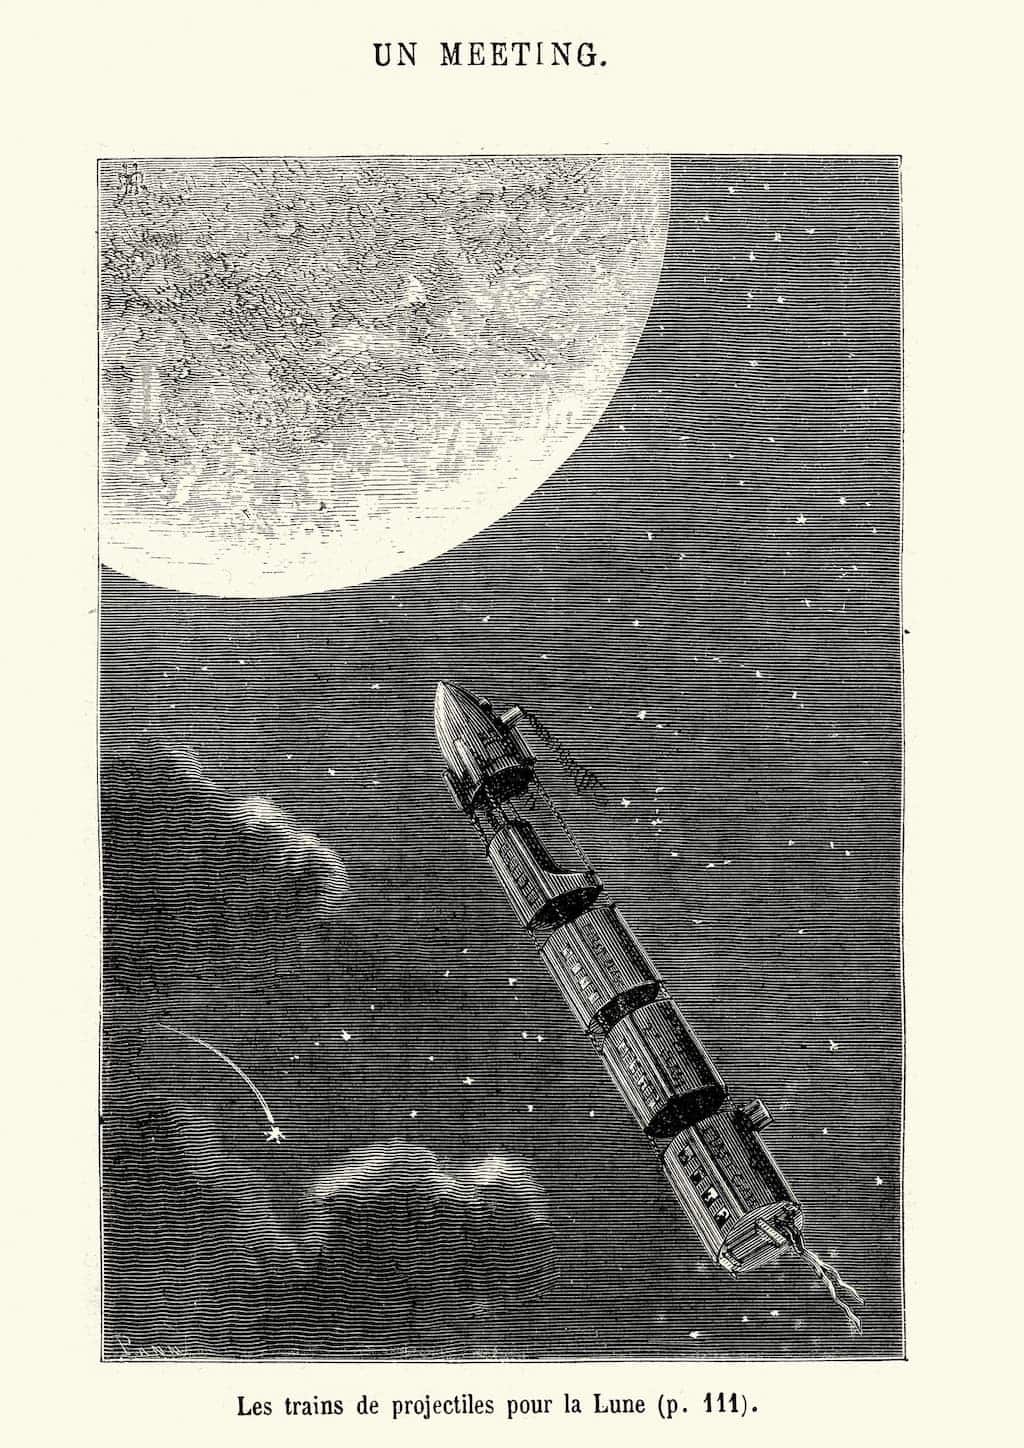 Un dessin d'un vaisseau spatial survolant la lune, inspiré des légendes imaginatives et des images à couper le souffle de Jules Verne.